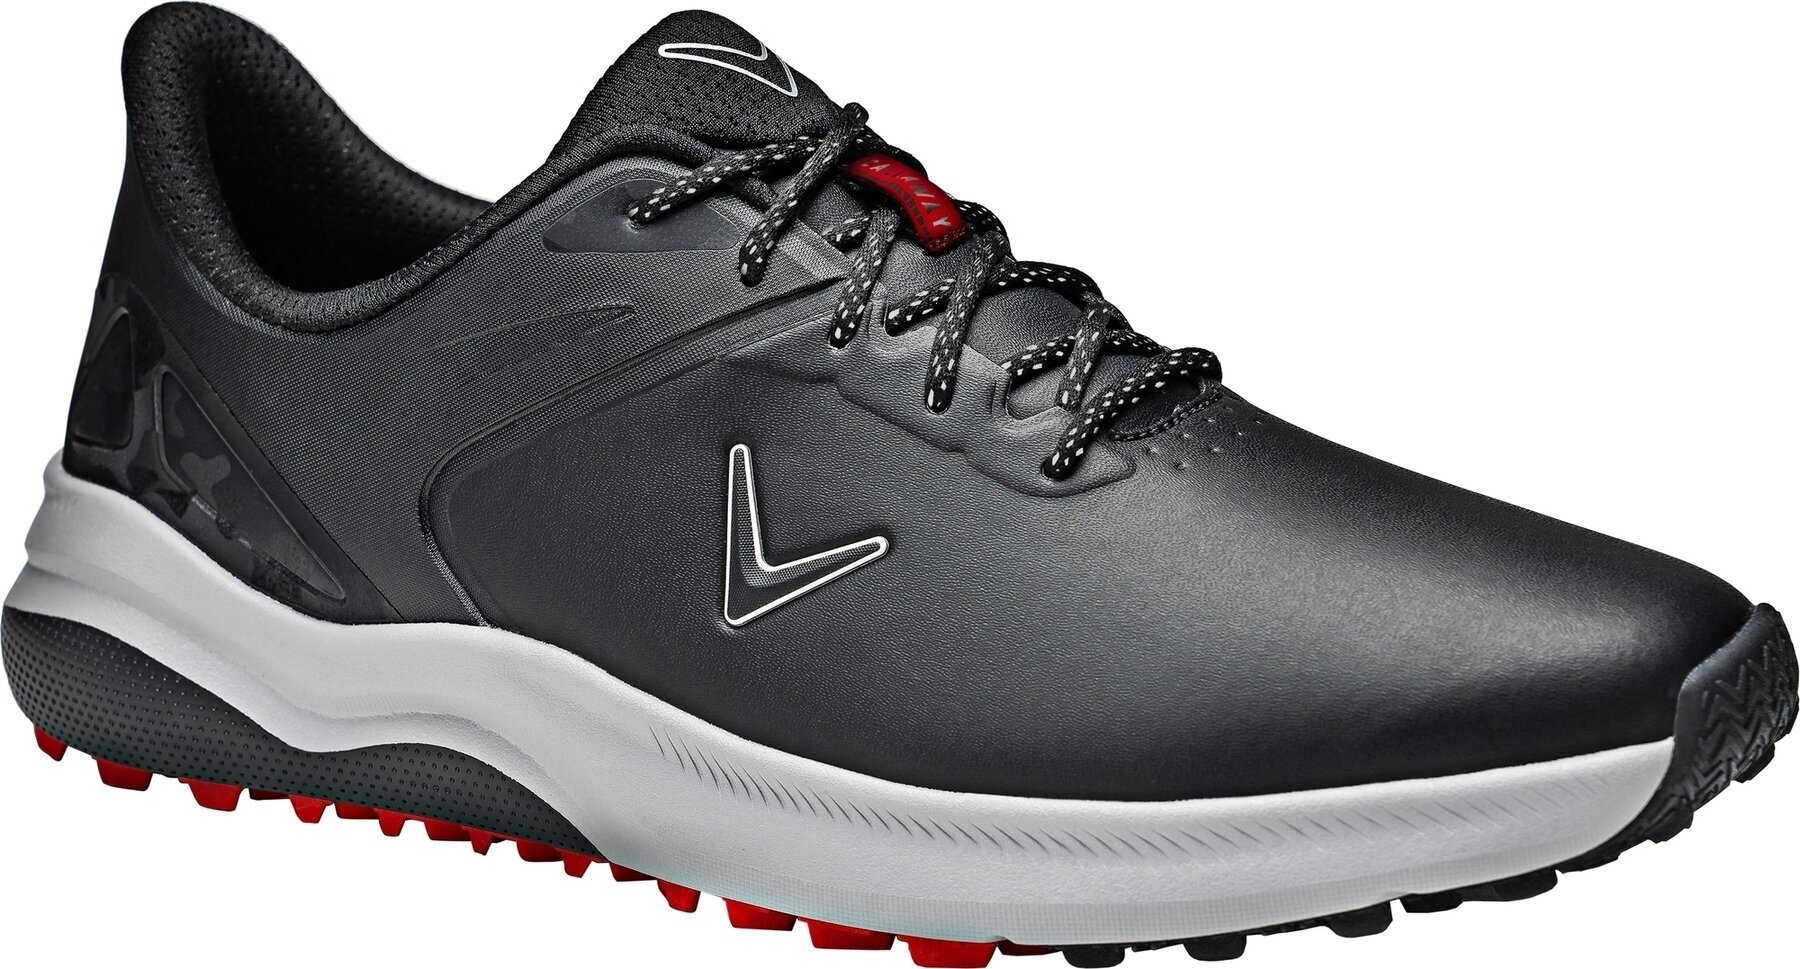 Heren golfschoenen Callaway Lazer Mens Golf Shoes Zwart 44,5